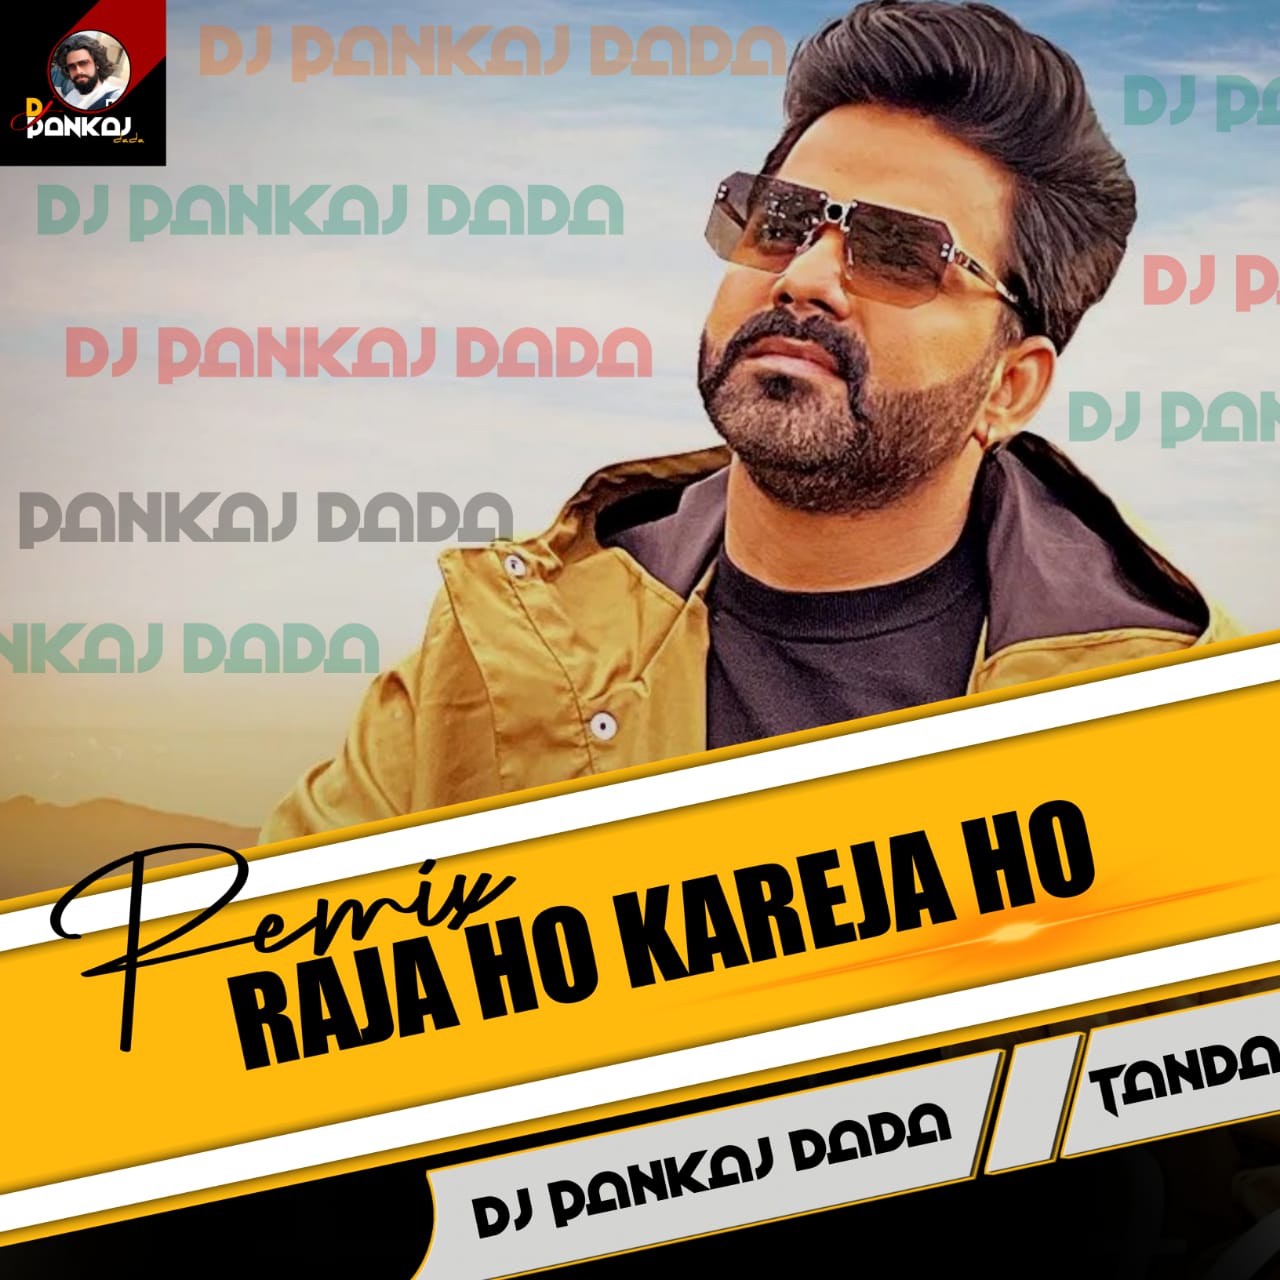 Raja Ho Kareja Ho Karejwa Karela Dhak Dhak{ Piano Bass RupchiK Club Remix } 2023 Dj Pankaj Dada Tanda